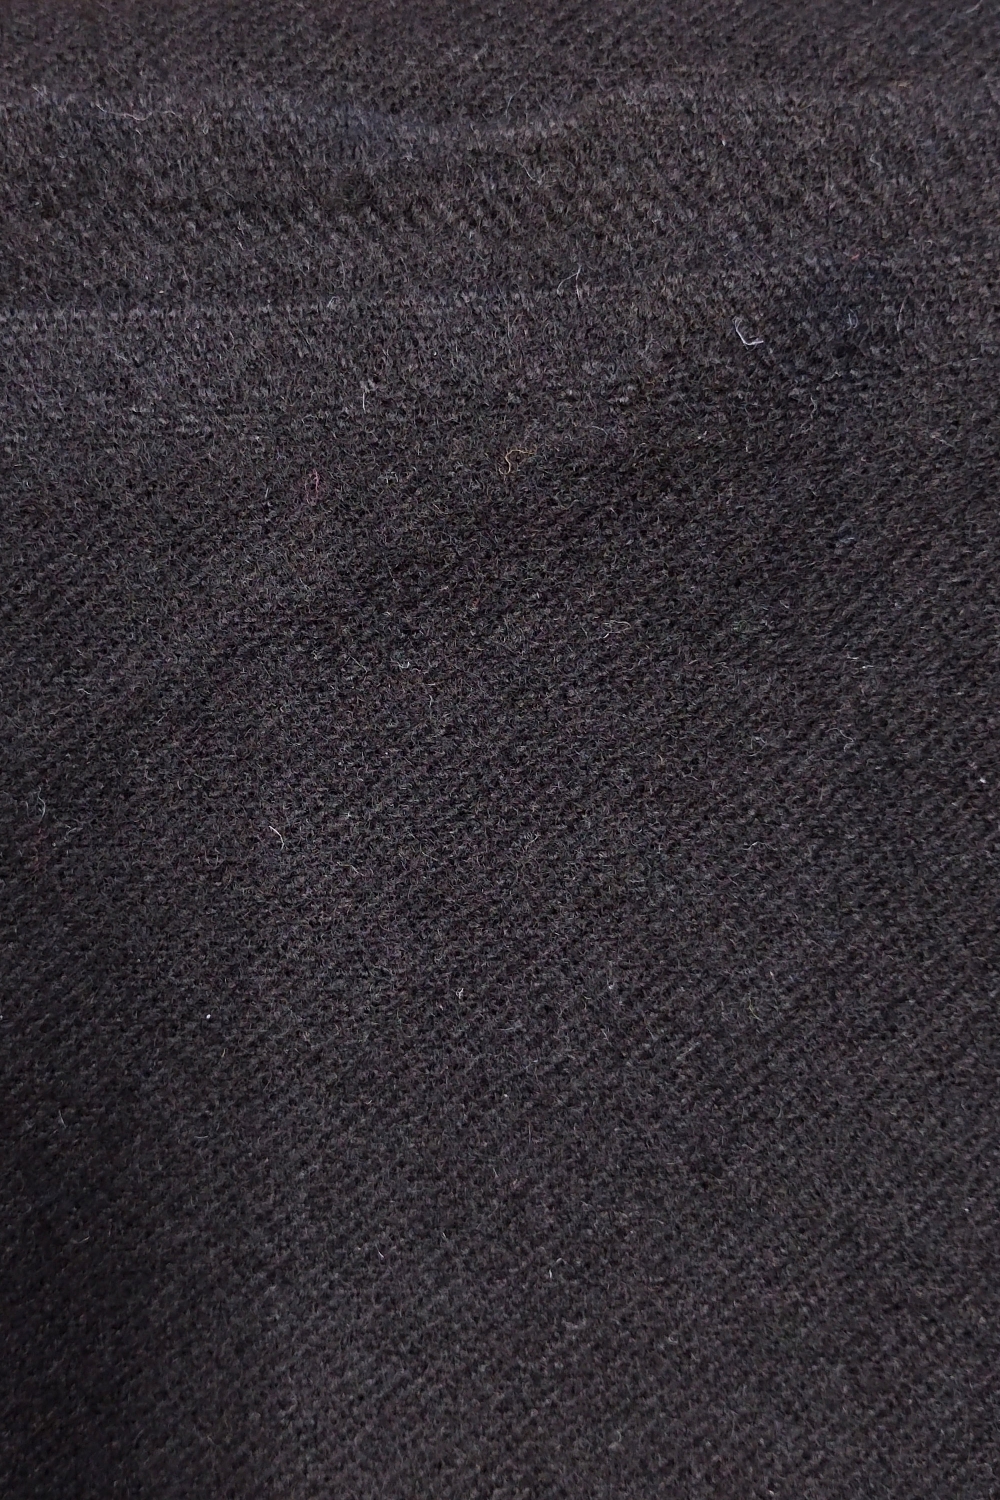 Restebit av lett valket ull, svart, 130 cm